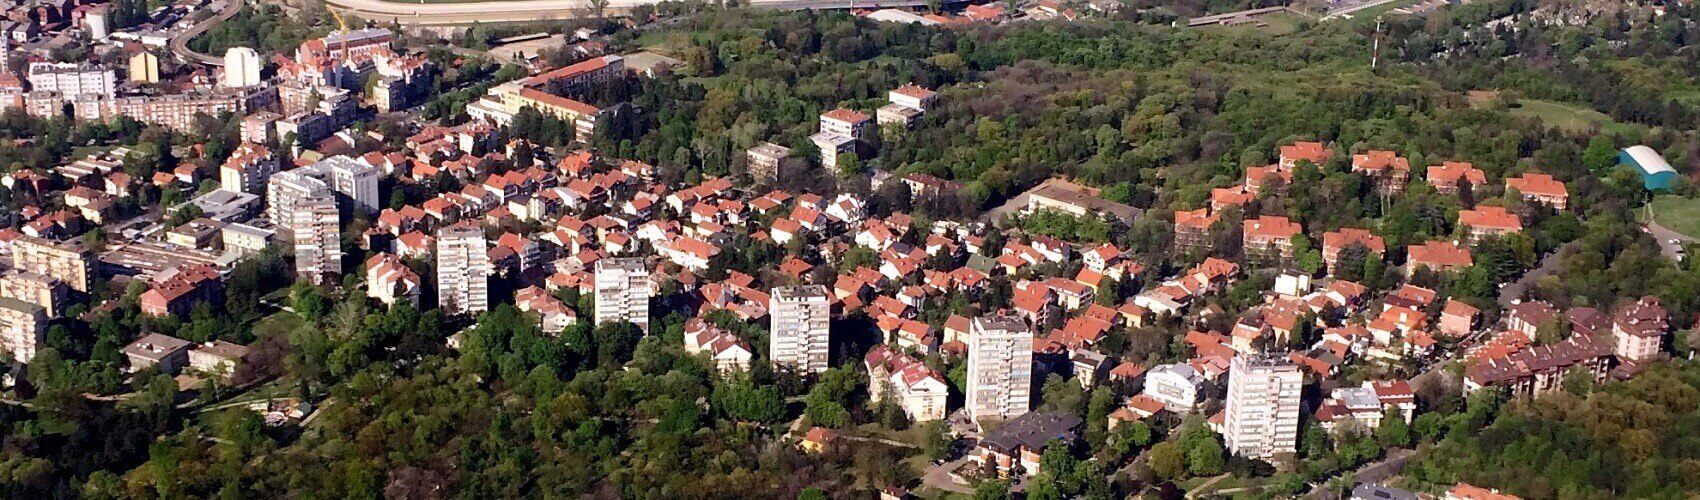 Kasko osiguranje naselje Golf | Beograd